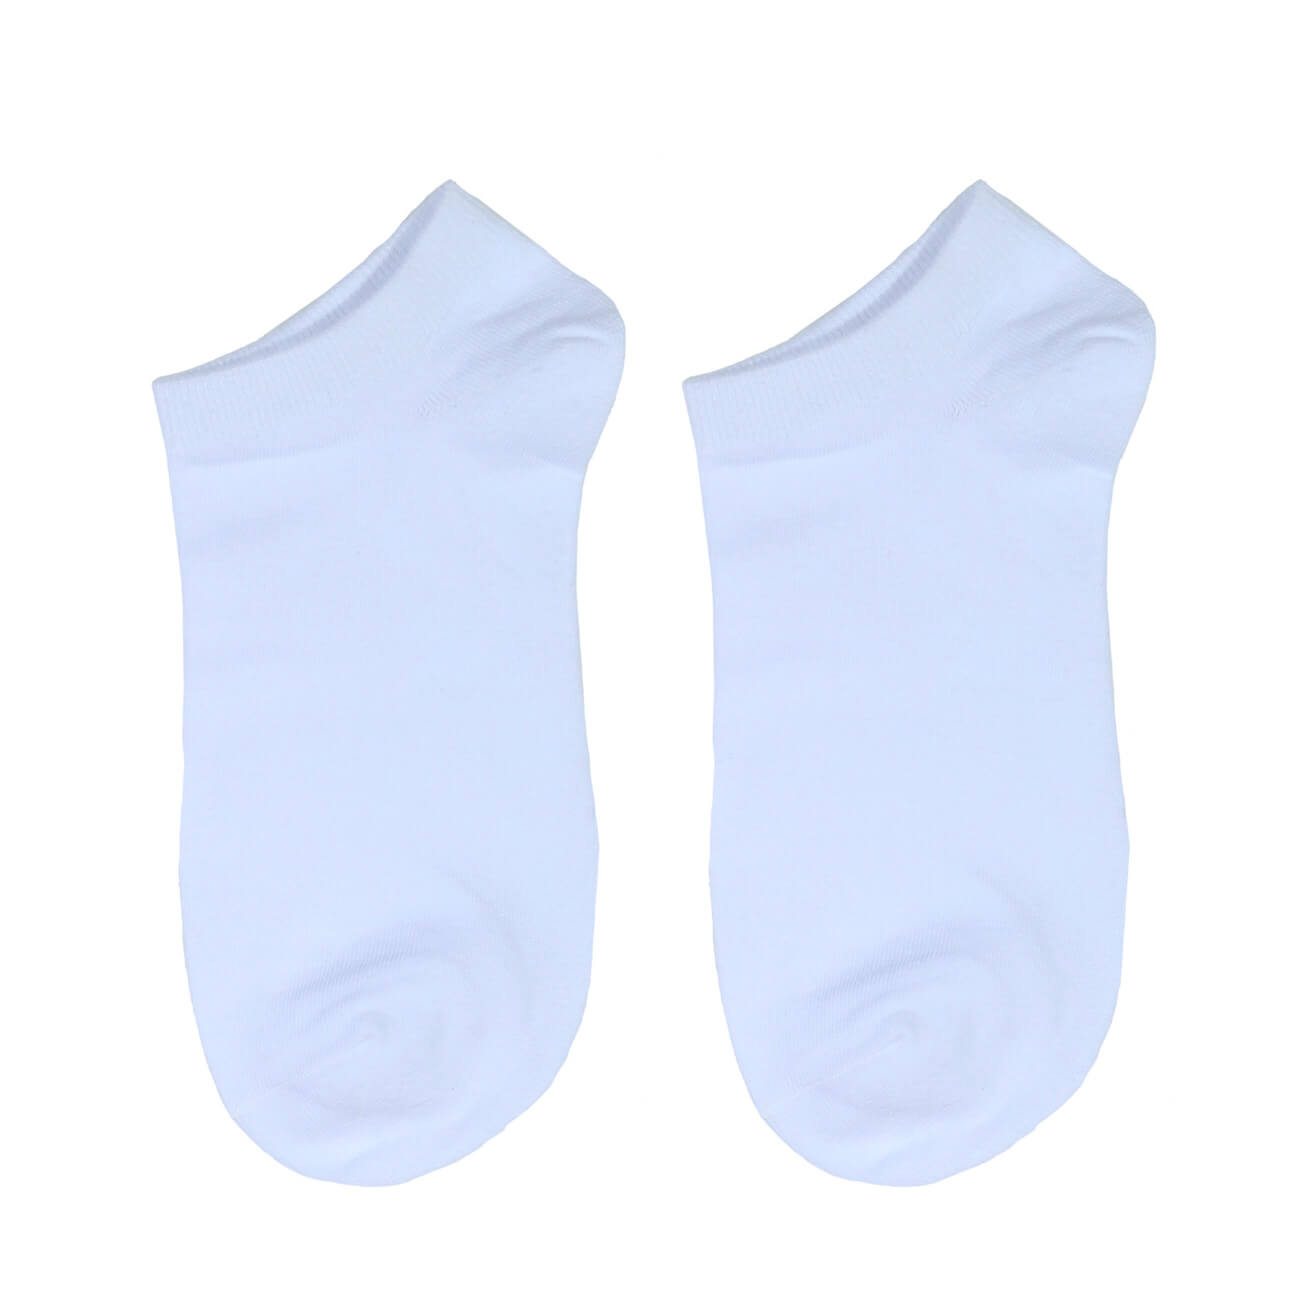 Носки женские, р. 36-38, хлопок/полиэстер, белые, Basic носки следки женские р 36 38 хлопок полиэстер белые basic